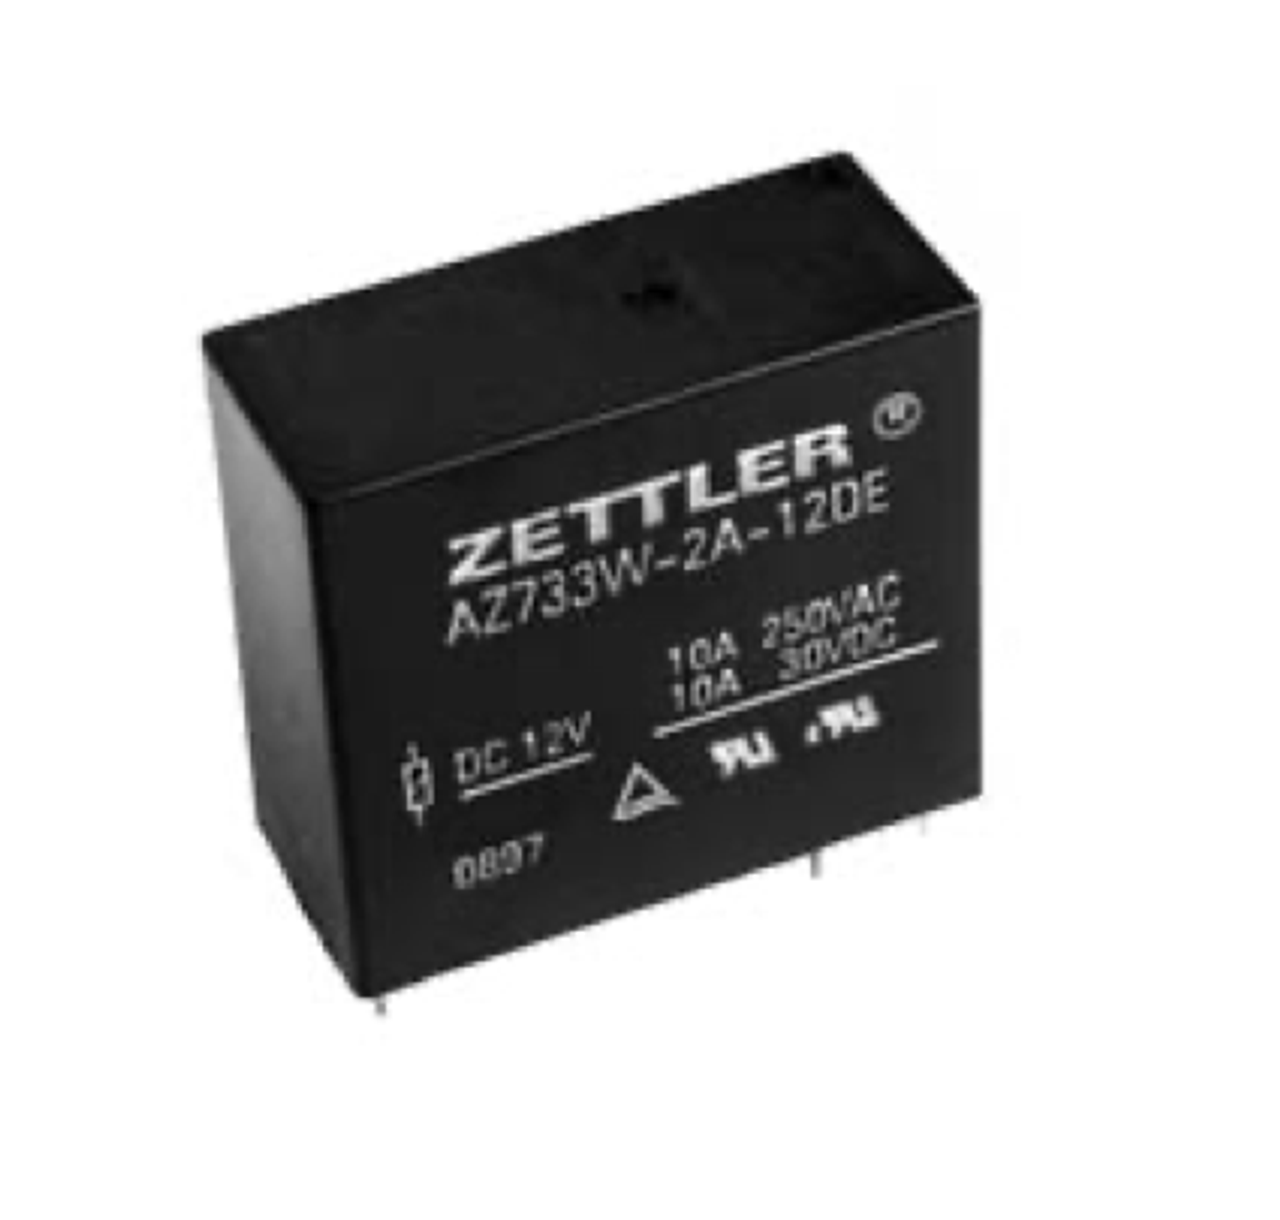 American Zettler AZ733W-2A-60DE Power Relay